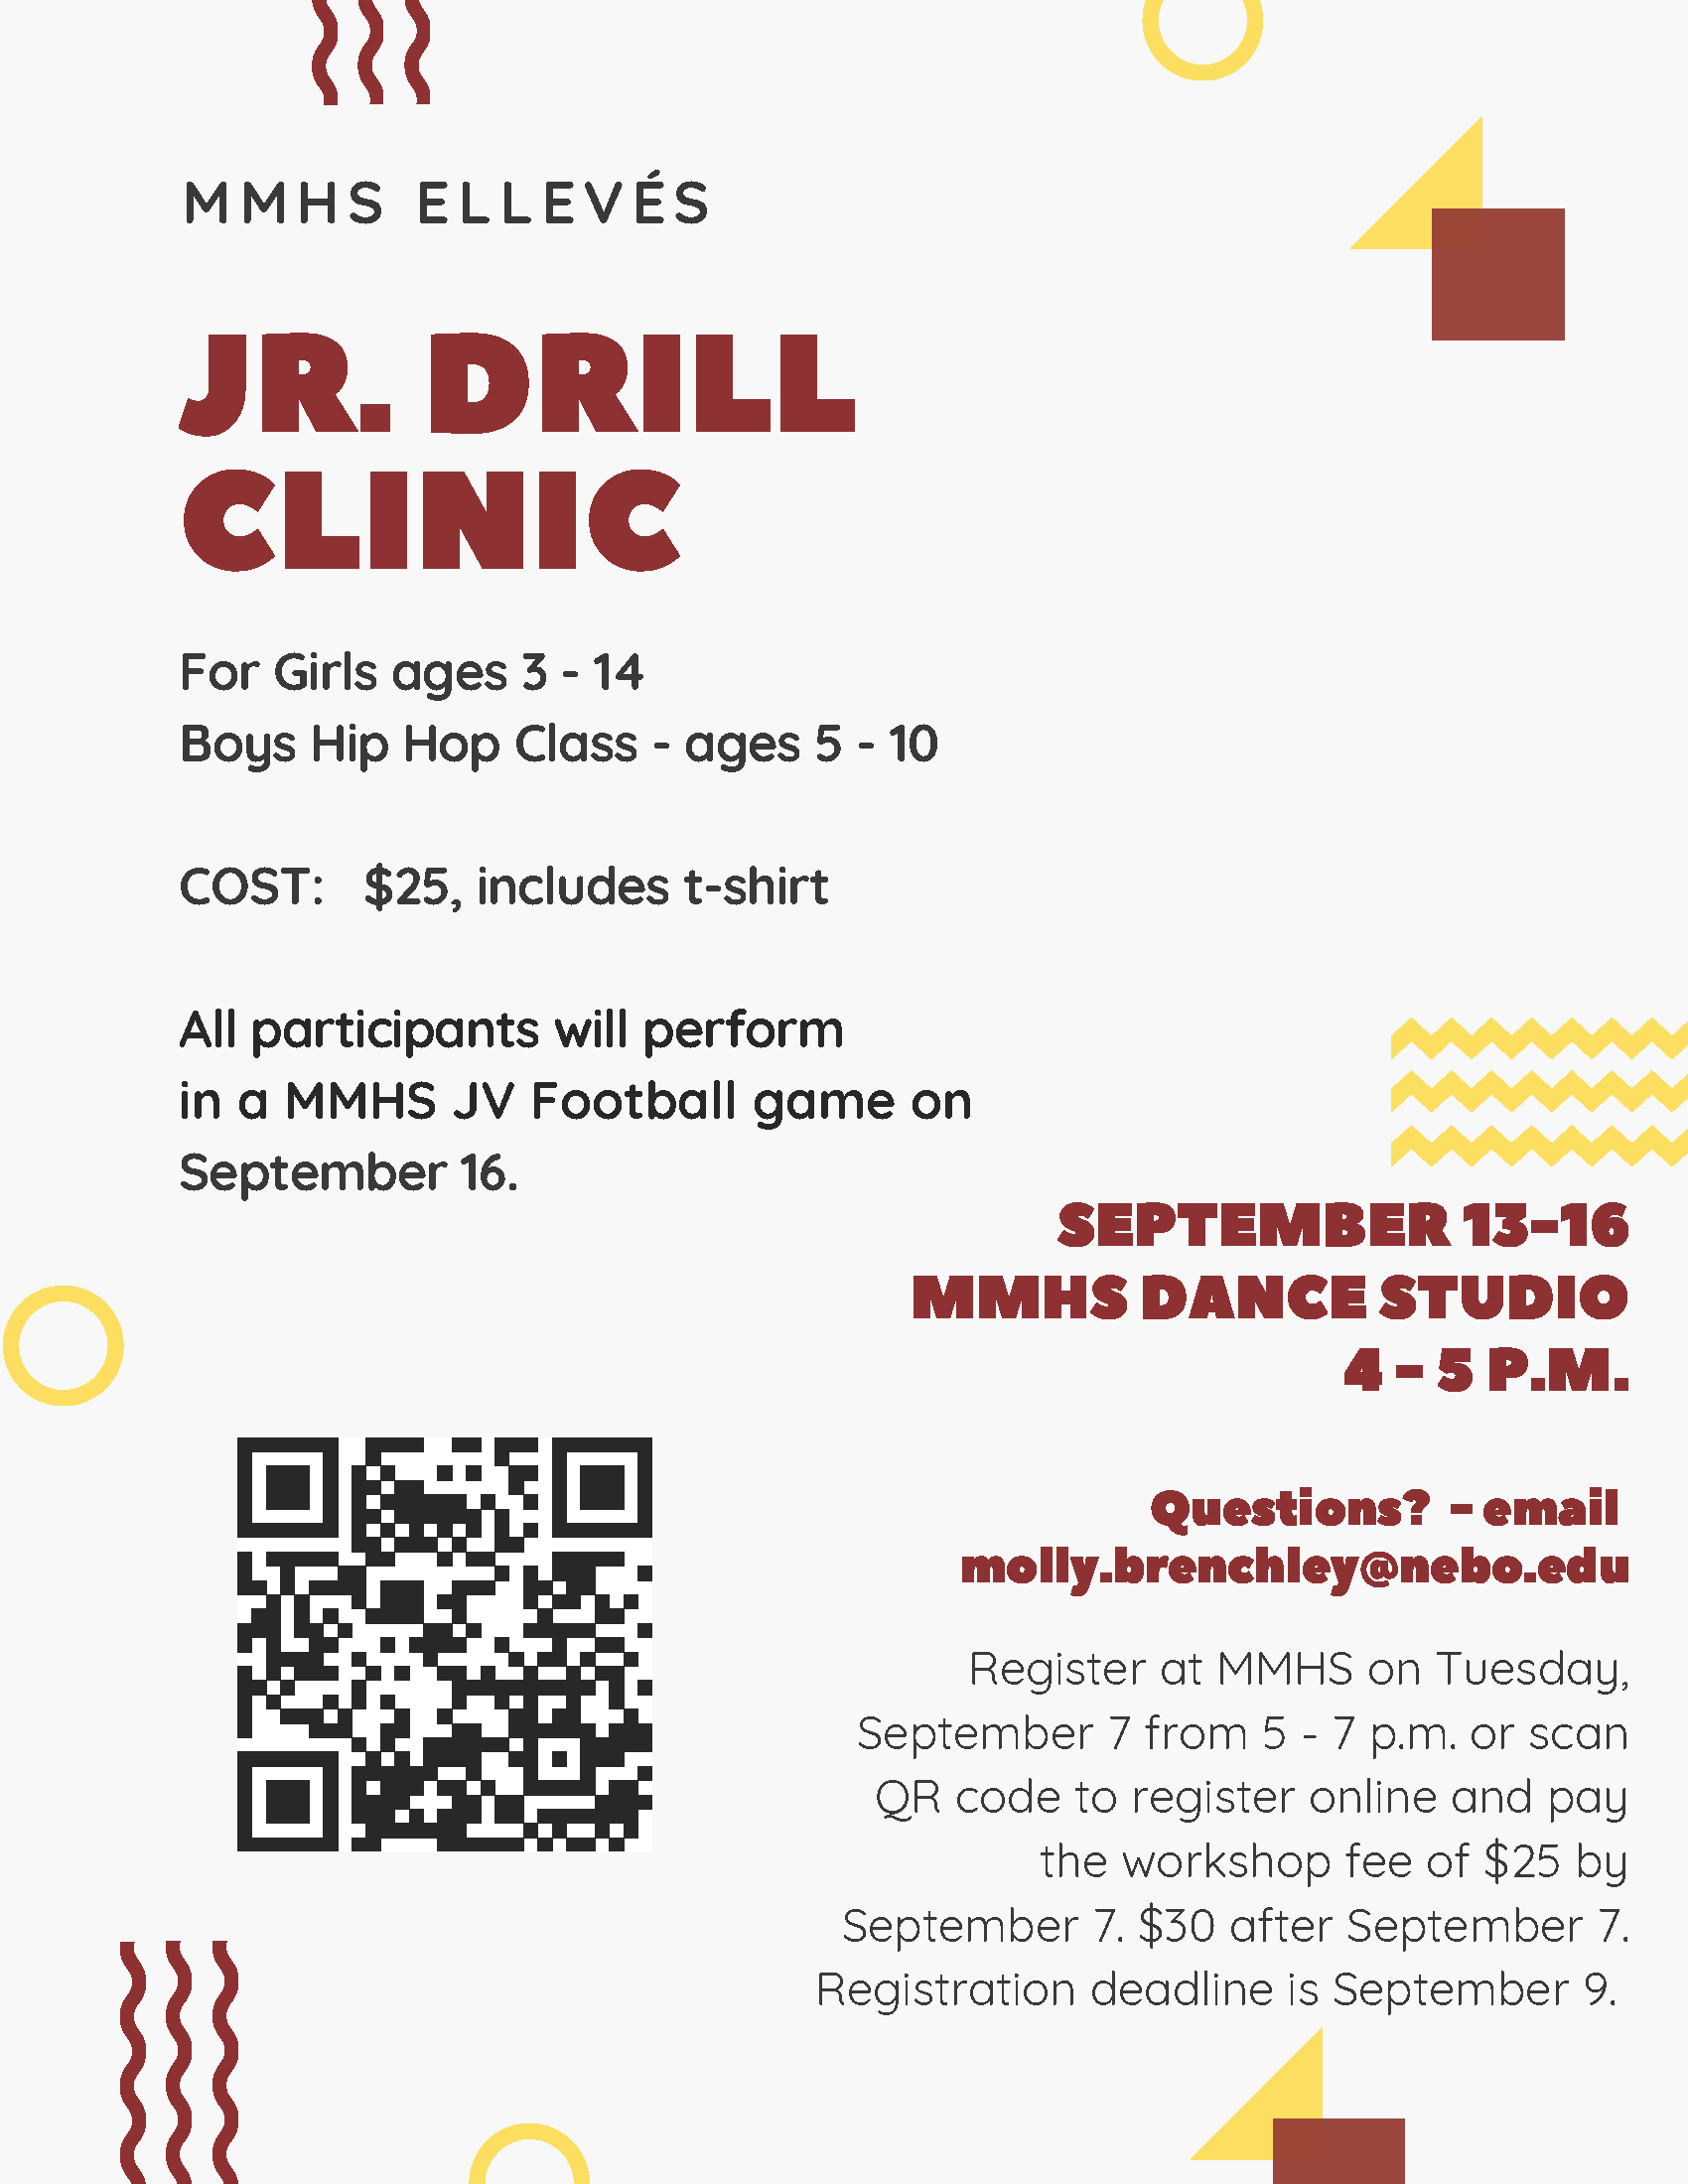 MMHS Jr. Drill Clinic